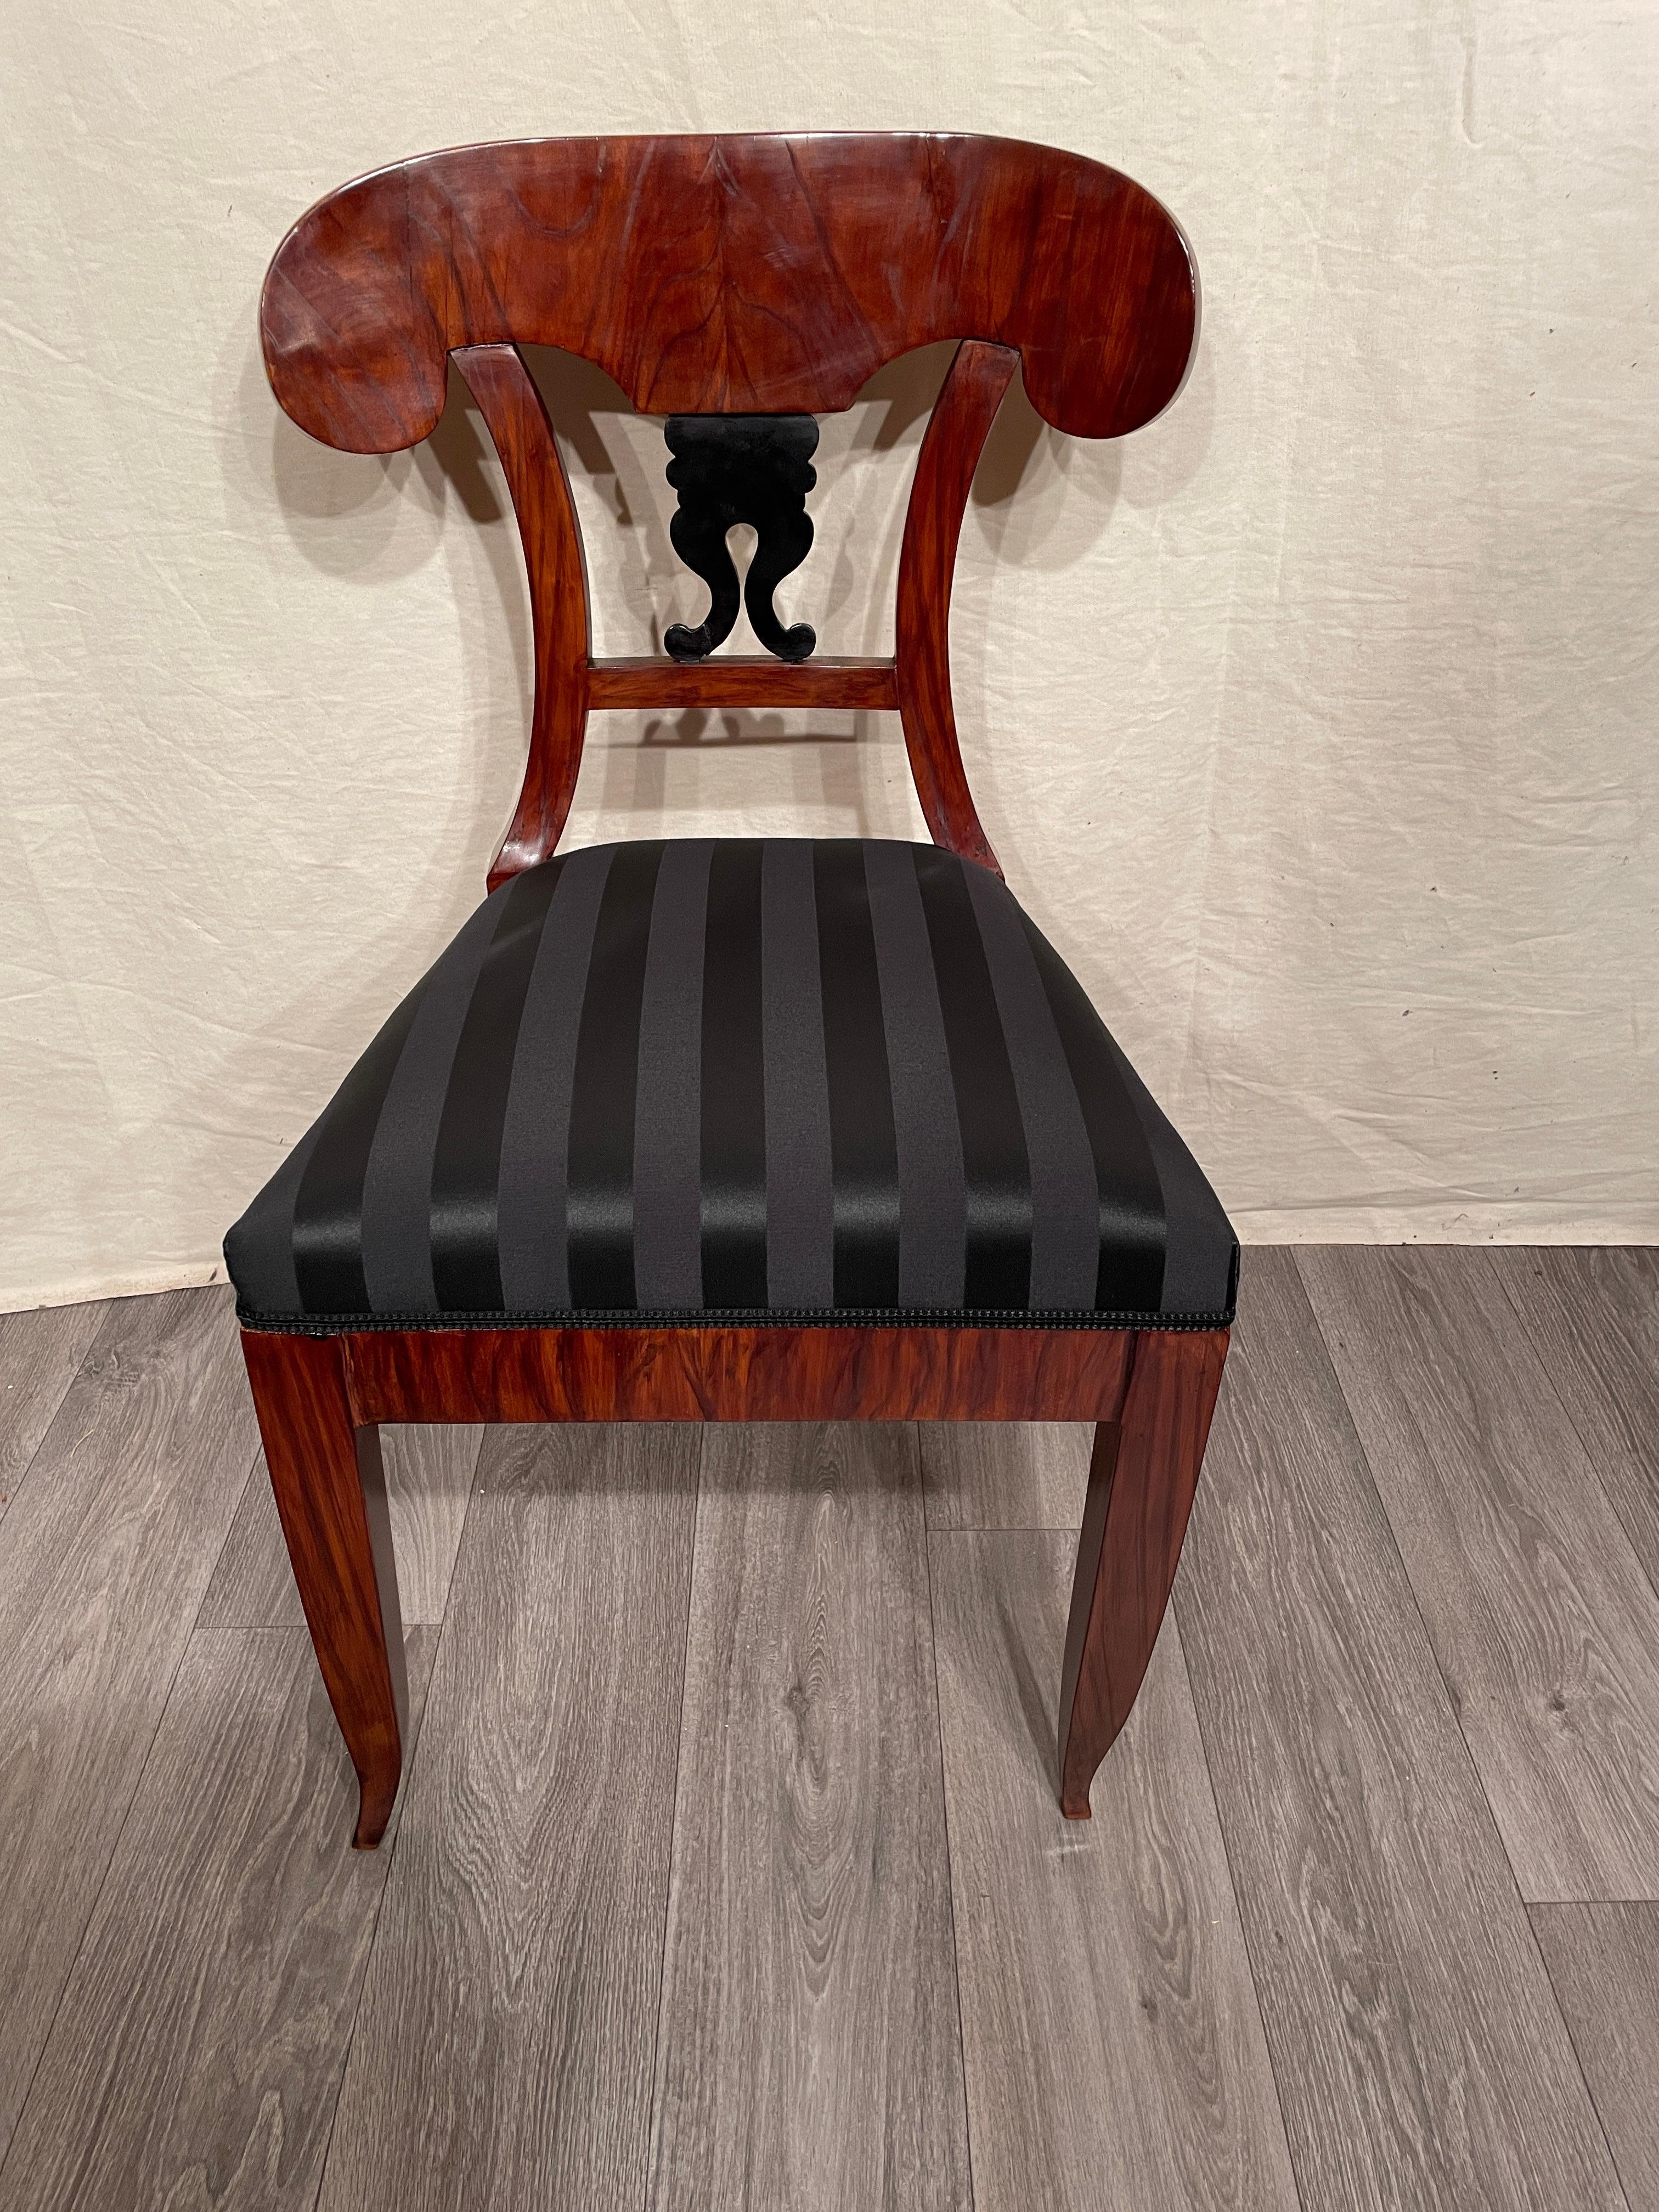 Biedermeier Stuhl, Süddeutsche 1820. 
Schönes Nussbaumfurnier ziert diesen originalen Biedermeier-Stuhl. Die Rückseite ist mit einem ebonisierten Volutenmotiv verziert. Der Stuhl wurde professionell aufgearbeitet und mit Schellack poliert. Er ist